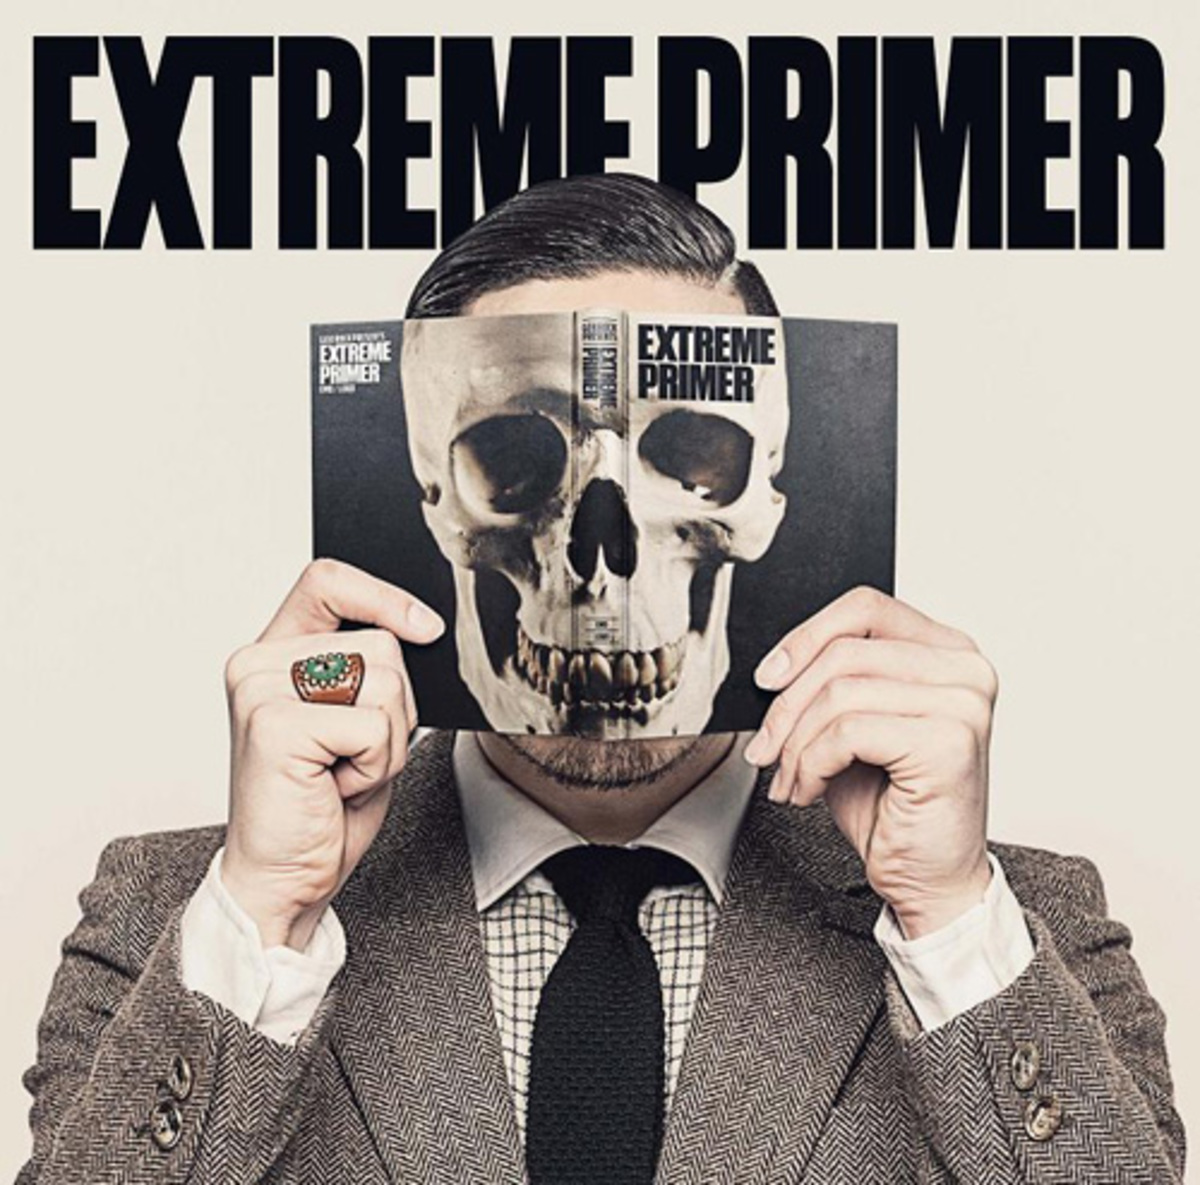 激ロック監修 エクストリーム ミュージック コンピ 激ロック Presents Extreme Primer が6 26に発売決定 激ロック ニュース